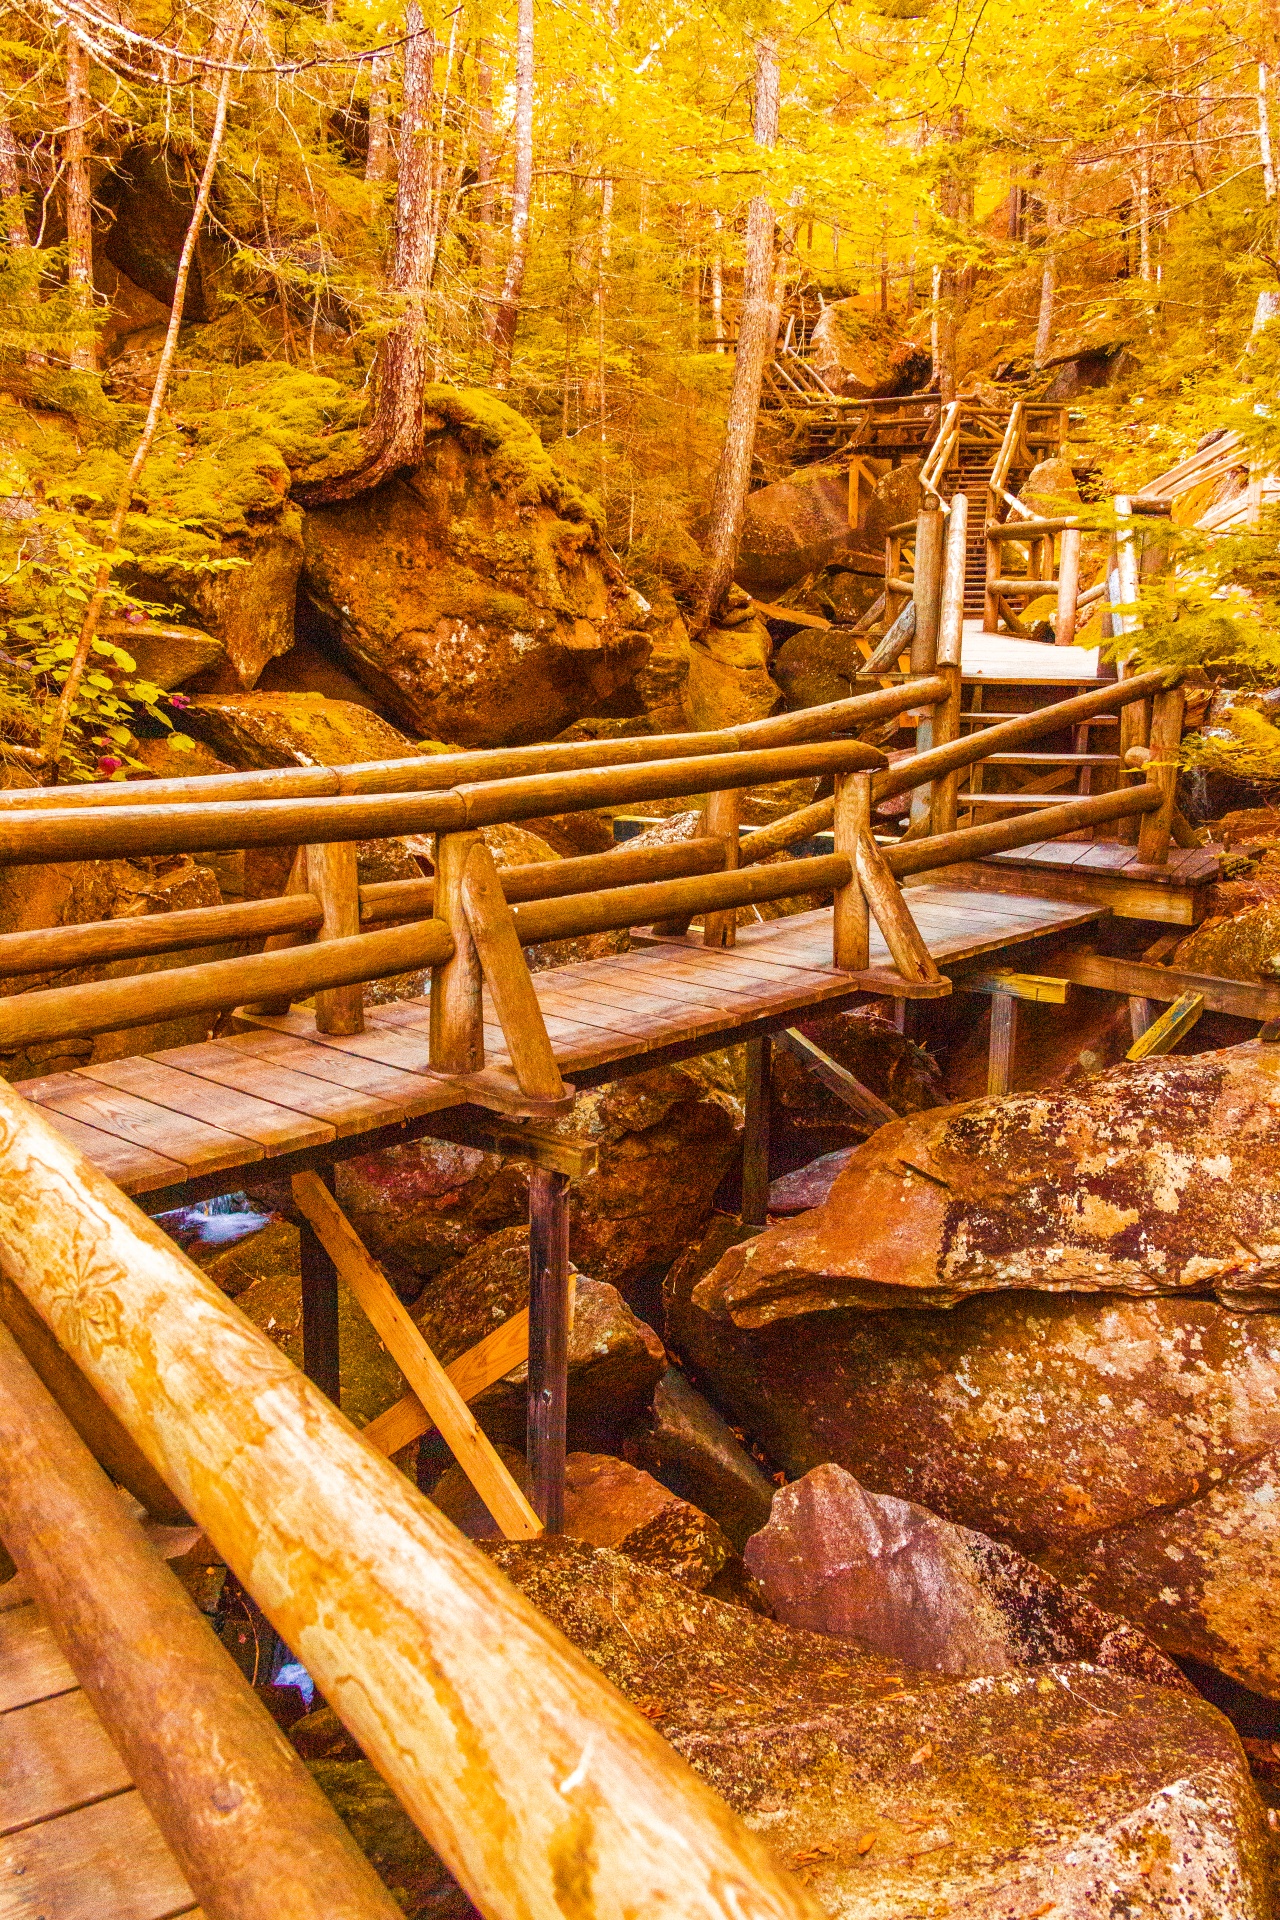 Boardwalk trail through gorge in fall